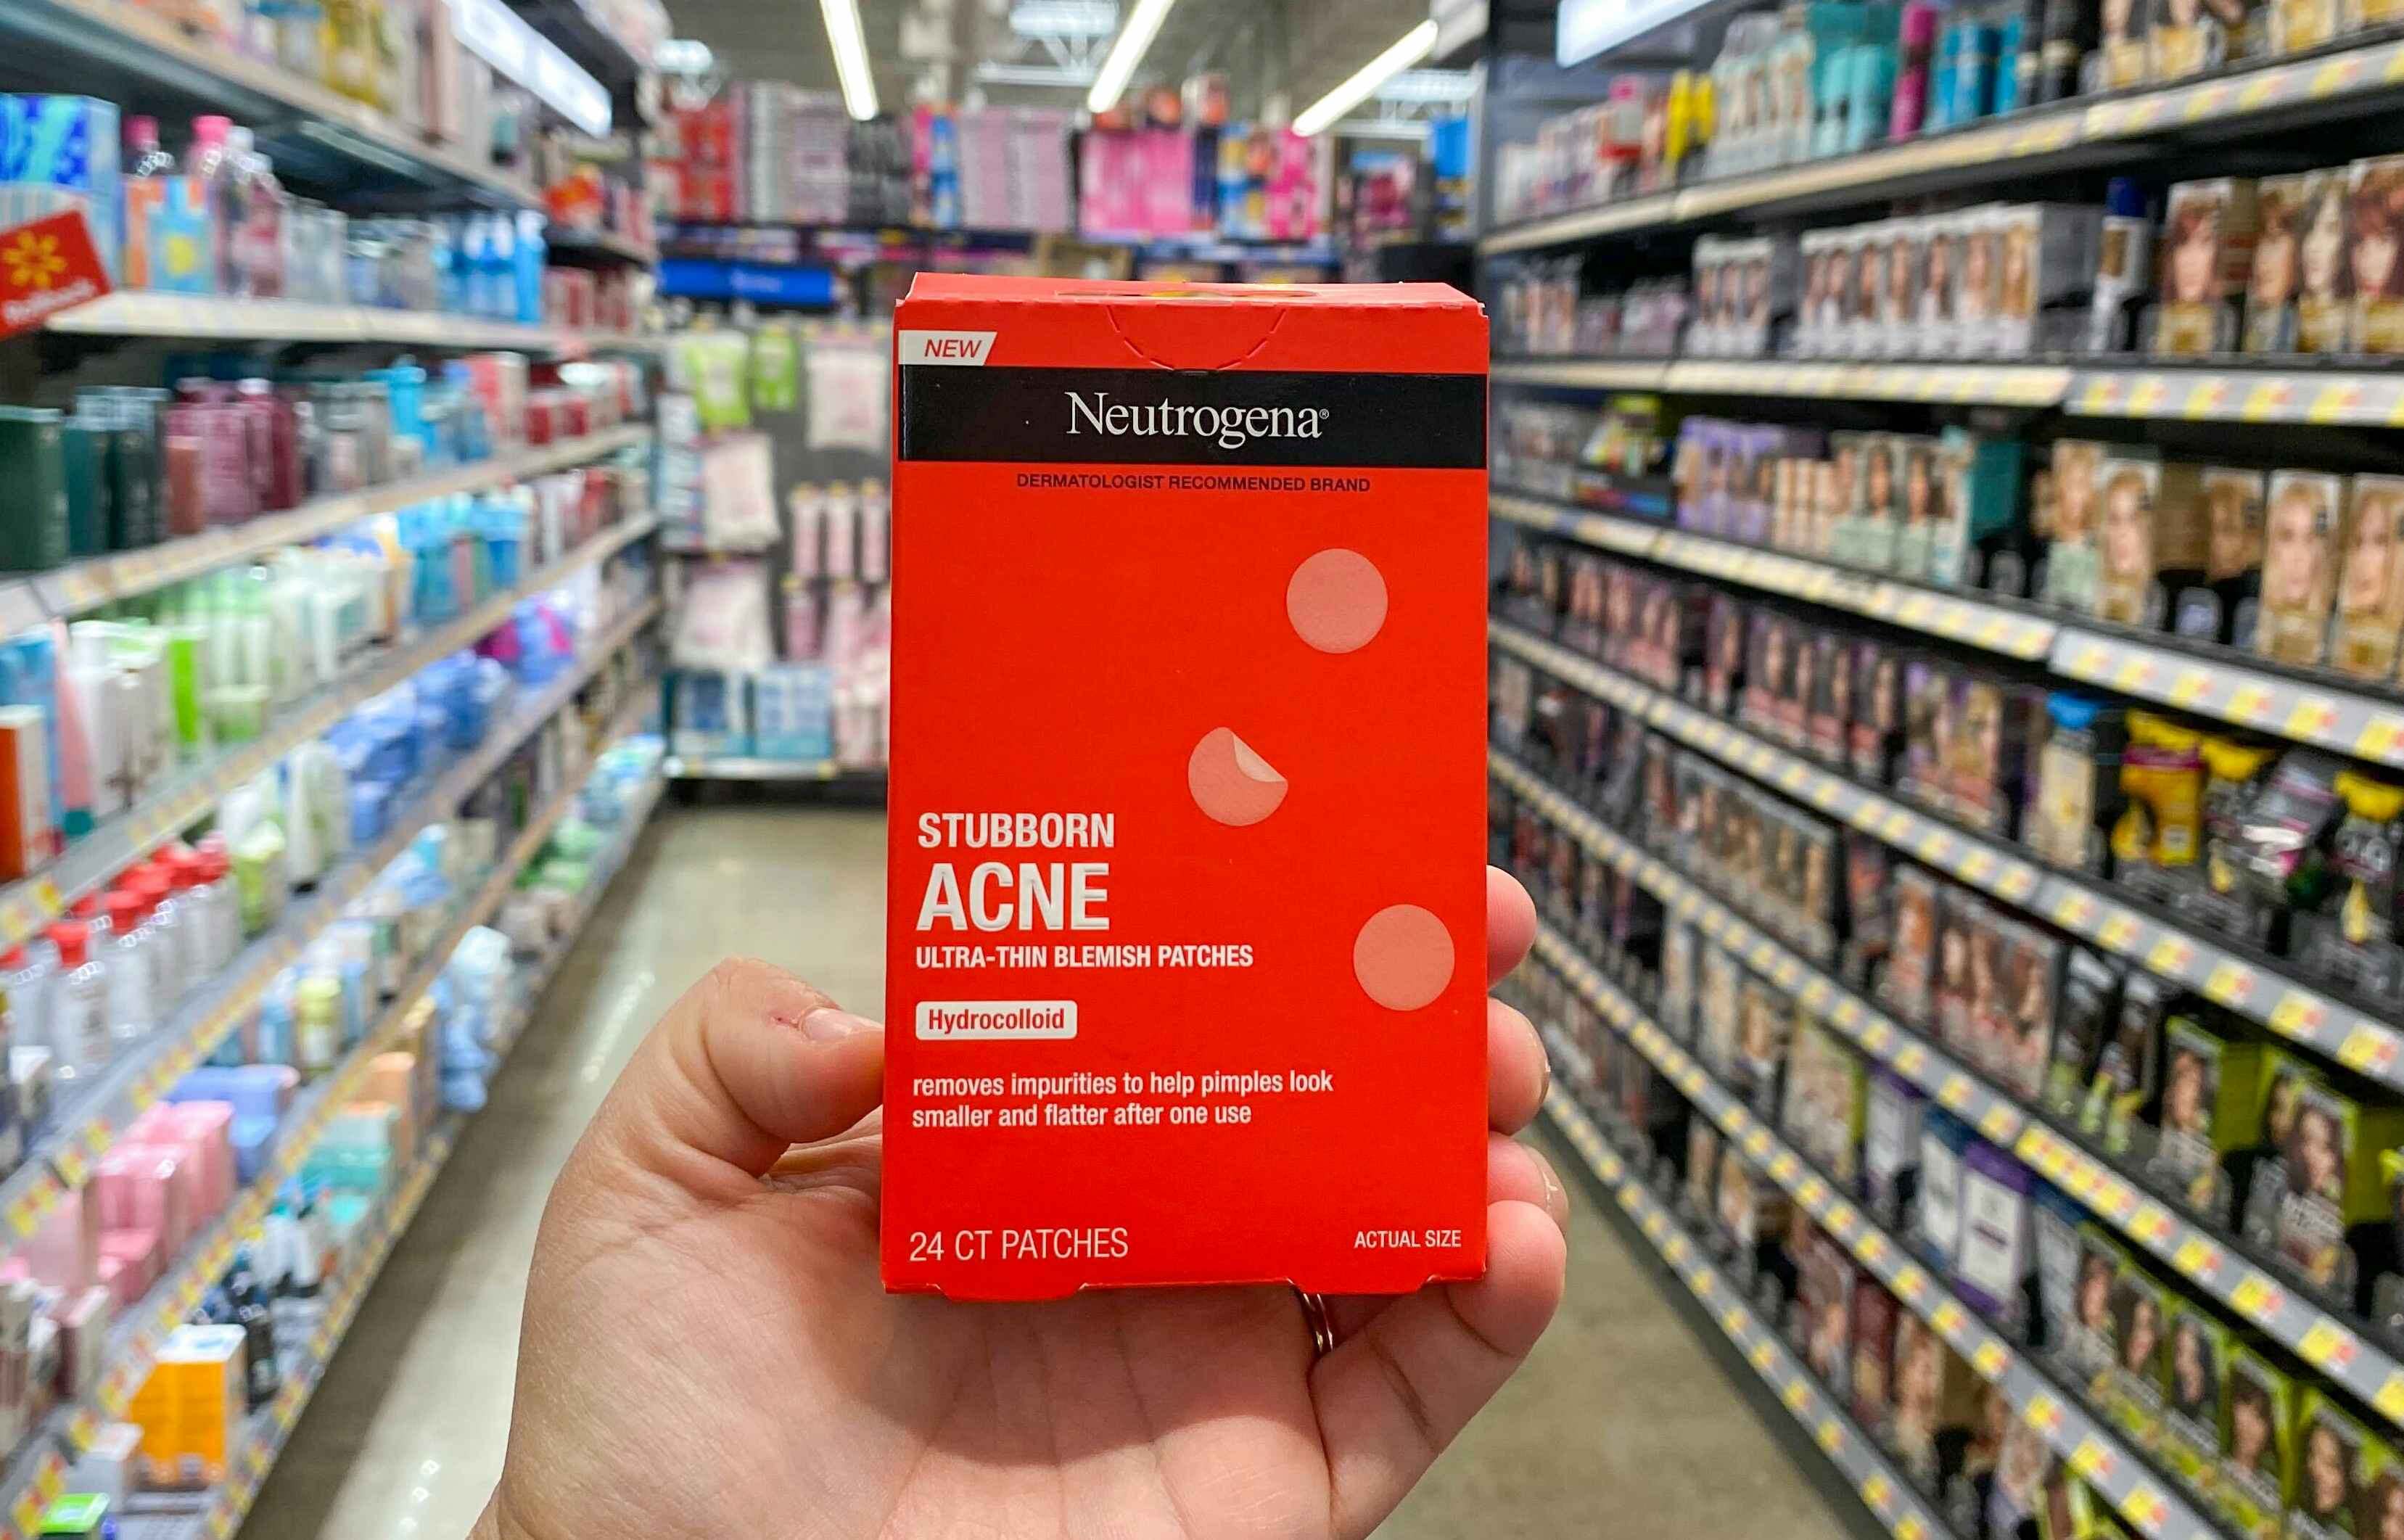 Neutrogena Stubborn Acne Patches, as Low as $3.19 on Amazon